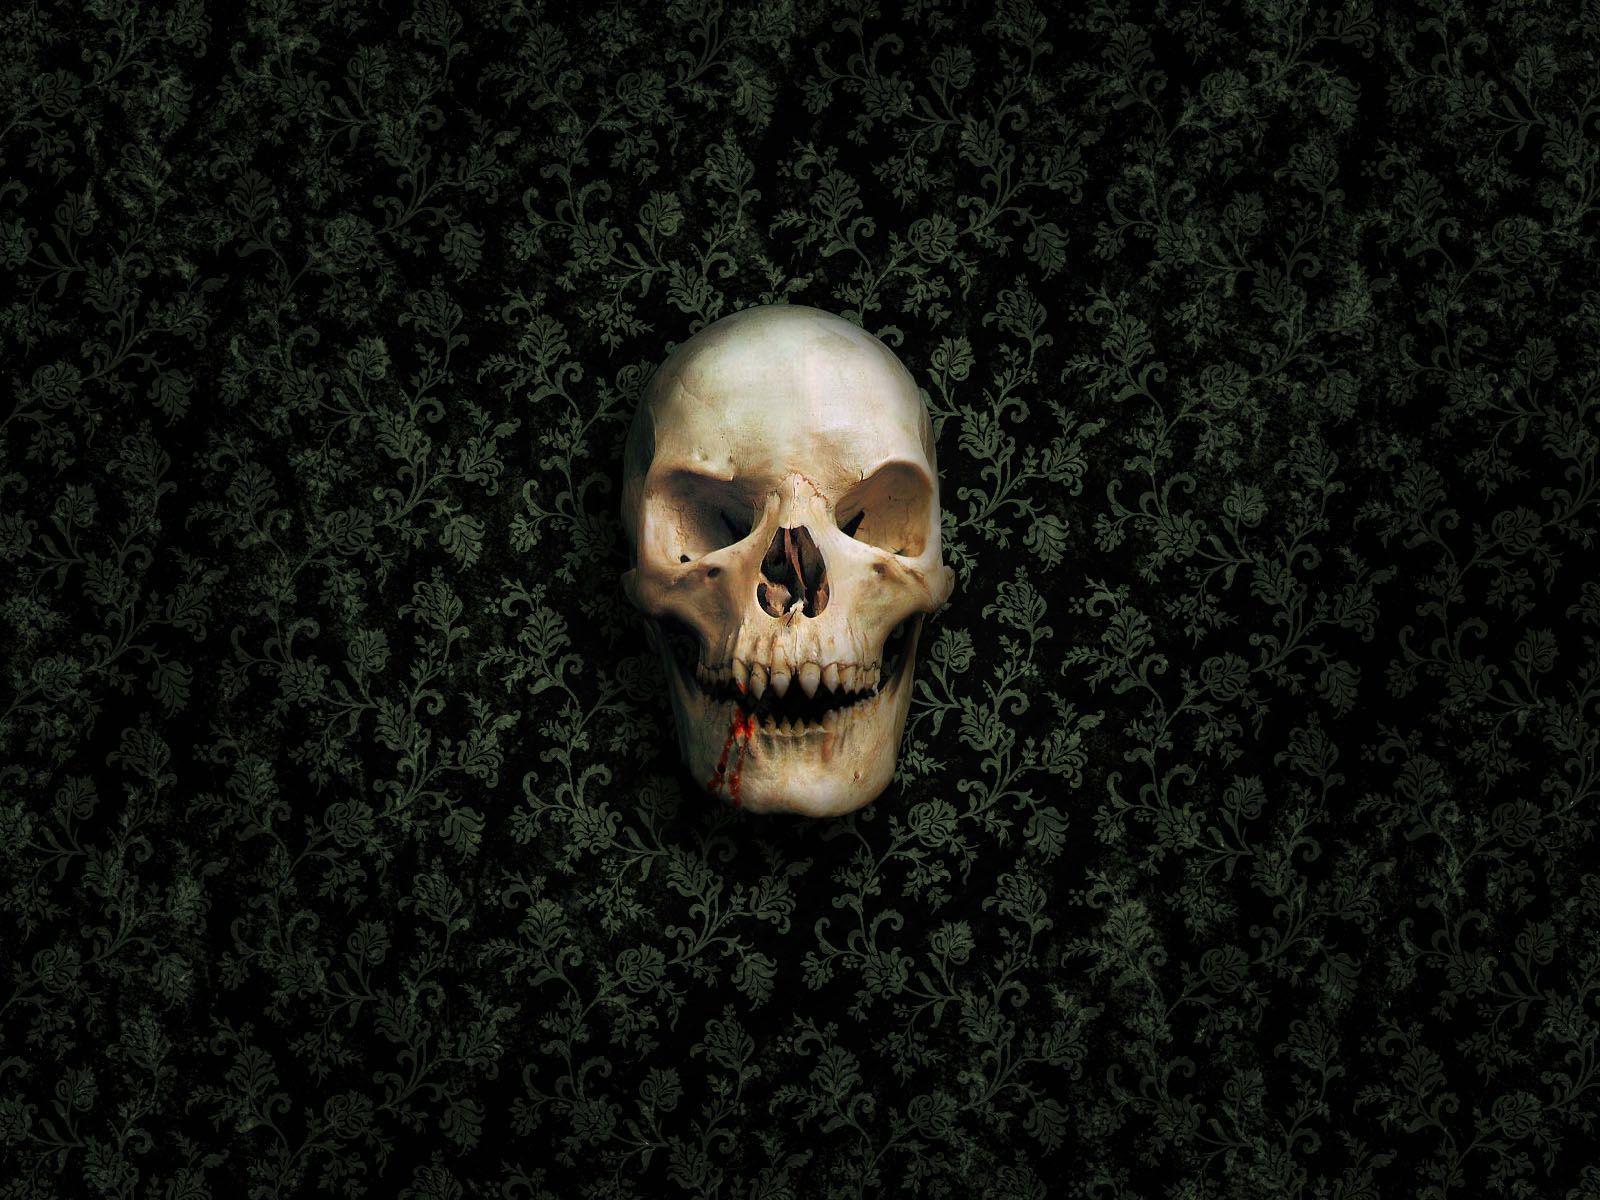 Skull Wallpaper HD